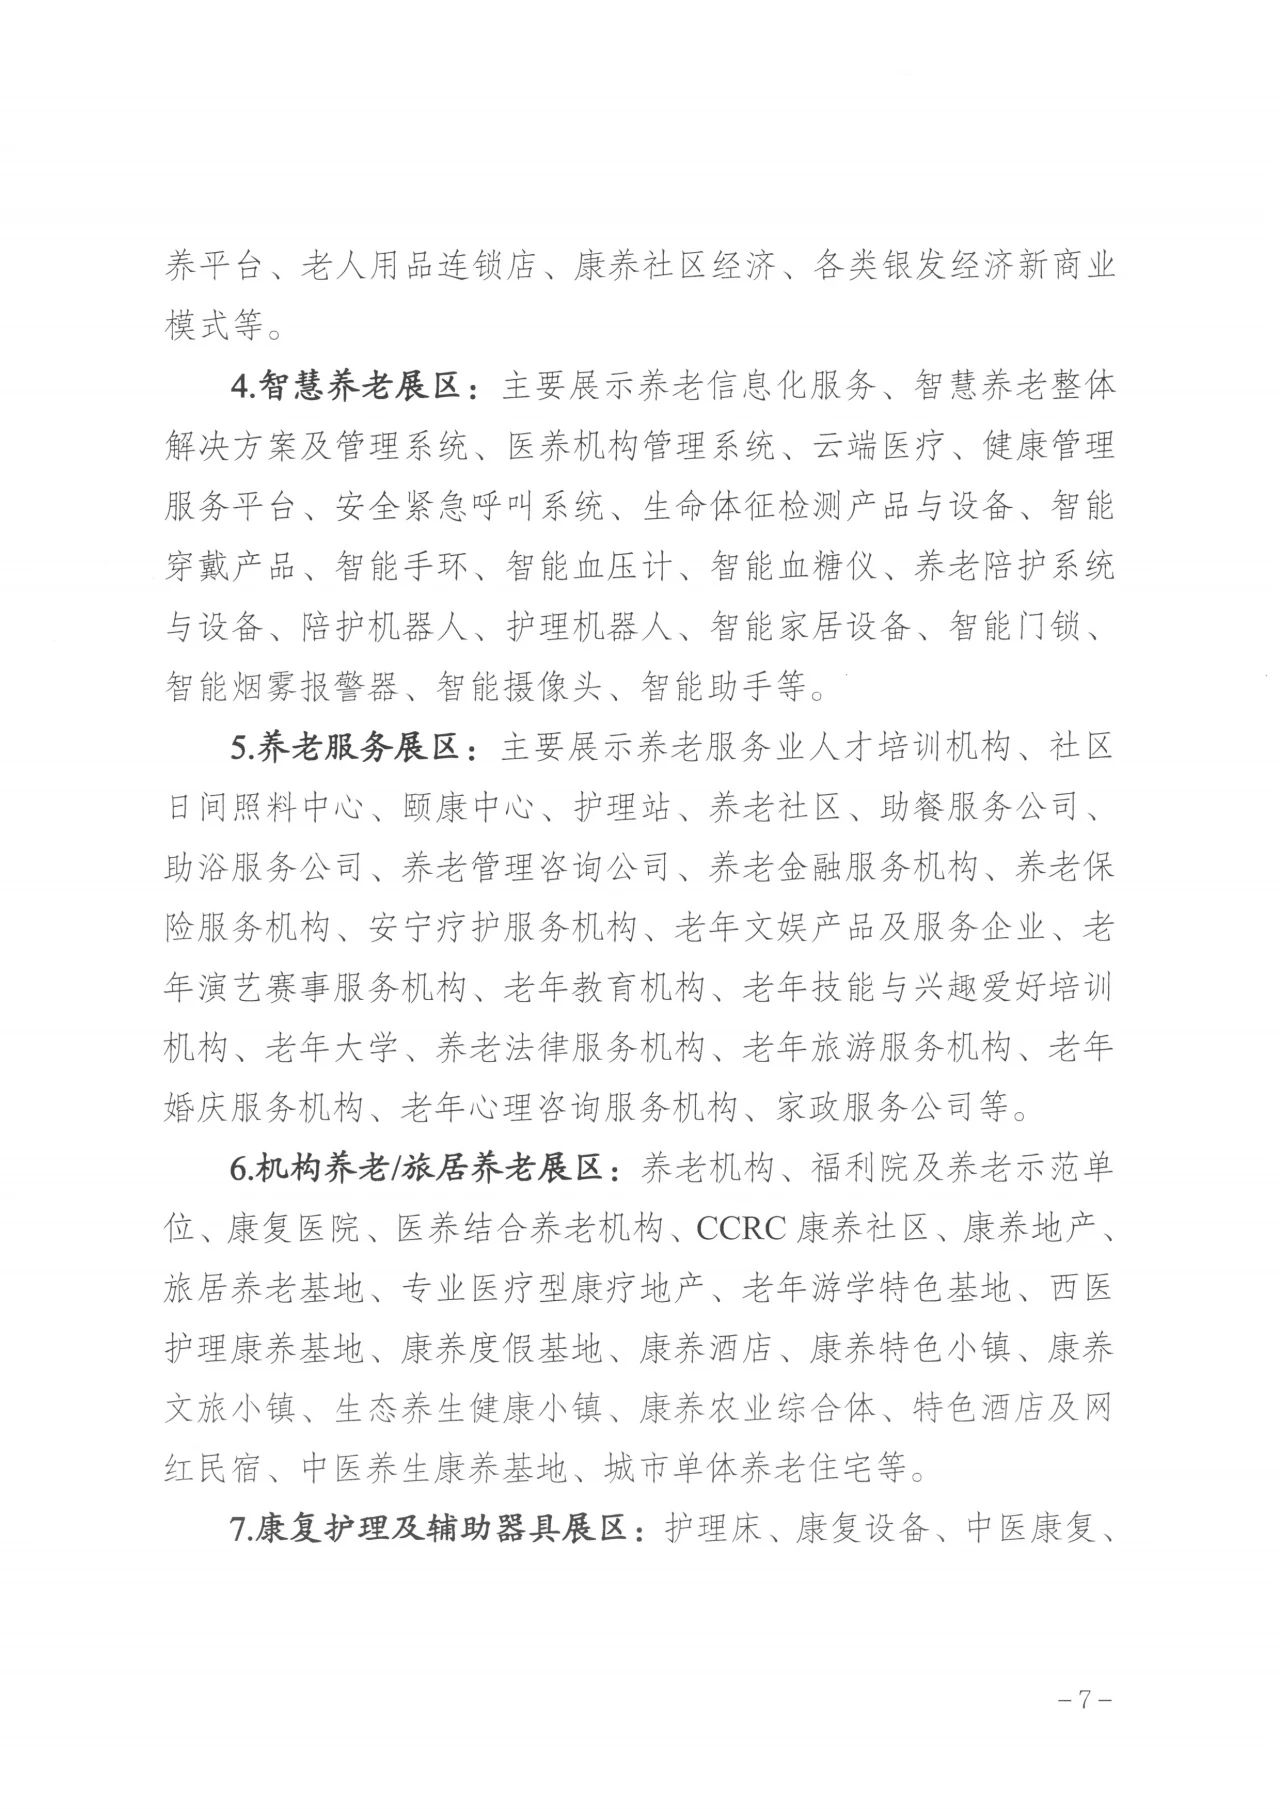 通知  广州市民政局关于邀请组织参加第八届广州老博会的函7.jpg